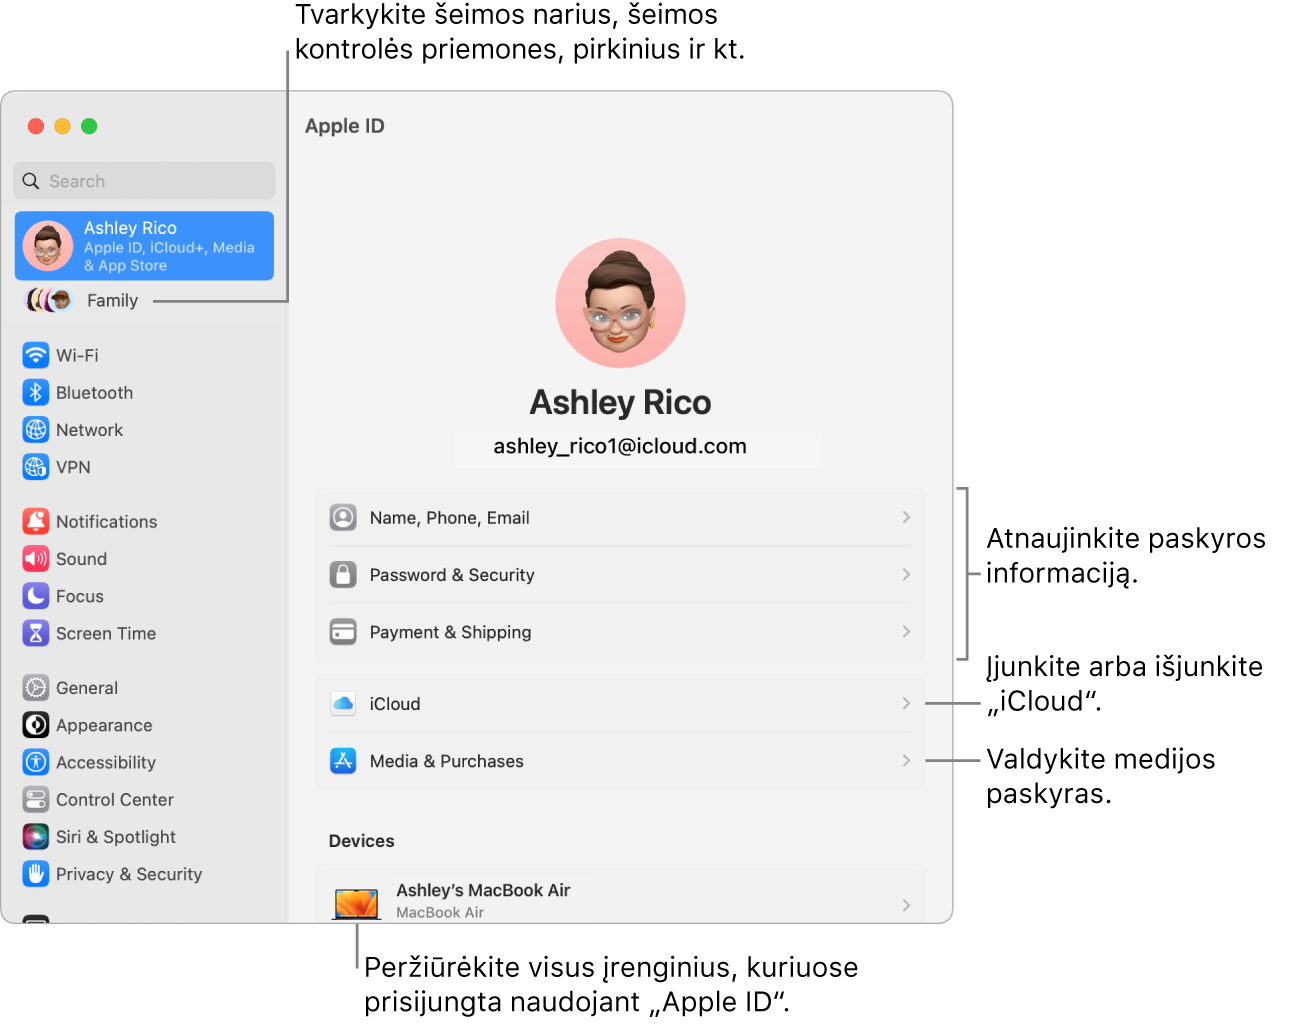 Skiltyje „System Settings“ pateikiami „Apple ID“ nustatymai su šaukiniais, skirtais atnaujinti paskyros informaciją, įjungti arba išjungti „iCloud“ funkcijas, tvarkyti medijos paskyras, ir „Family“, kur galite tvarkyti šeimos narius, tėvų kontrolę, pirkinius ir kt.